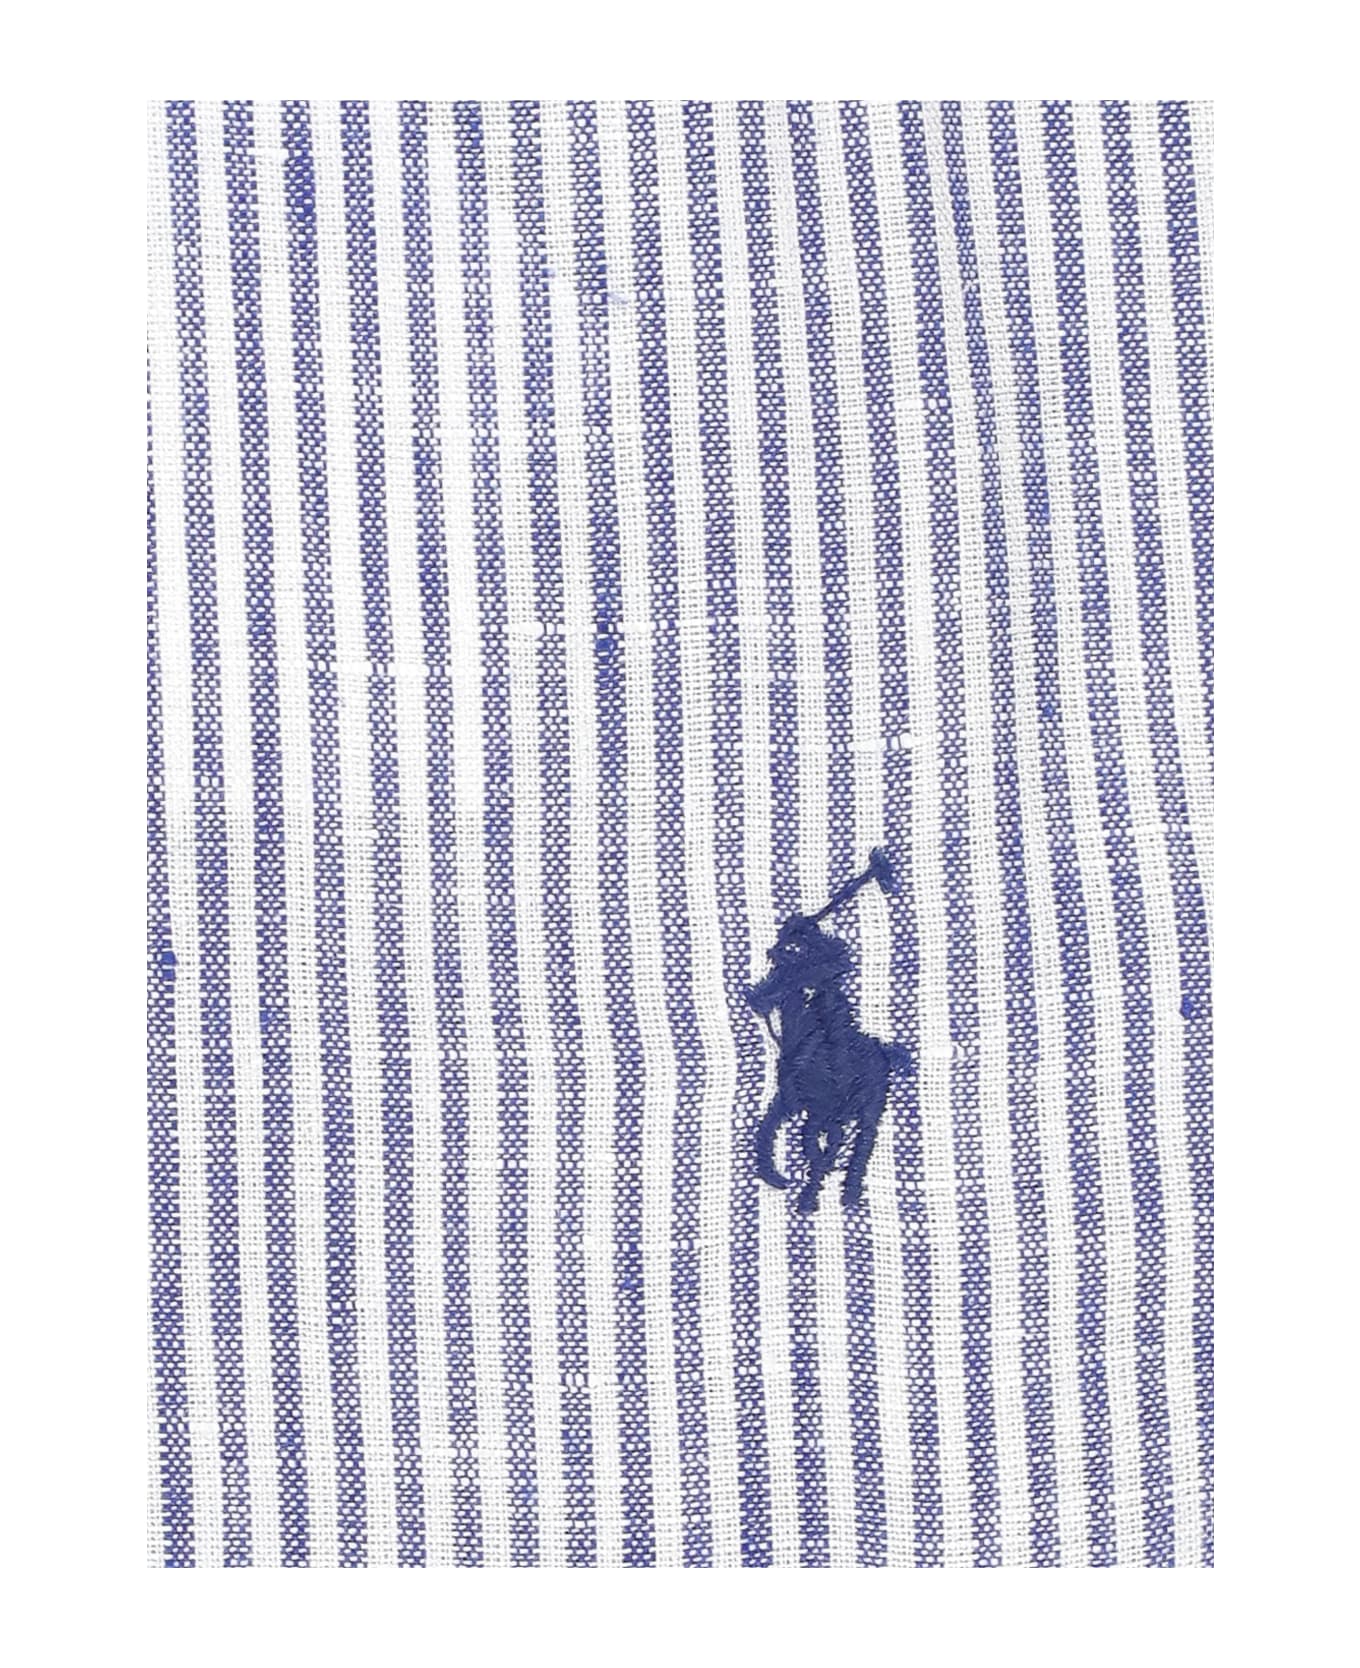 Ralph Lauren Pony Cotton Shirt Polo Ralph Lauren - Blue シャツ